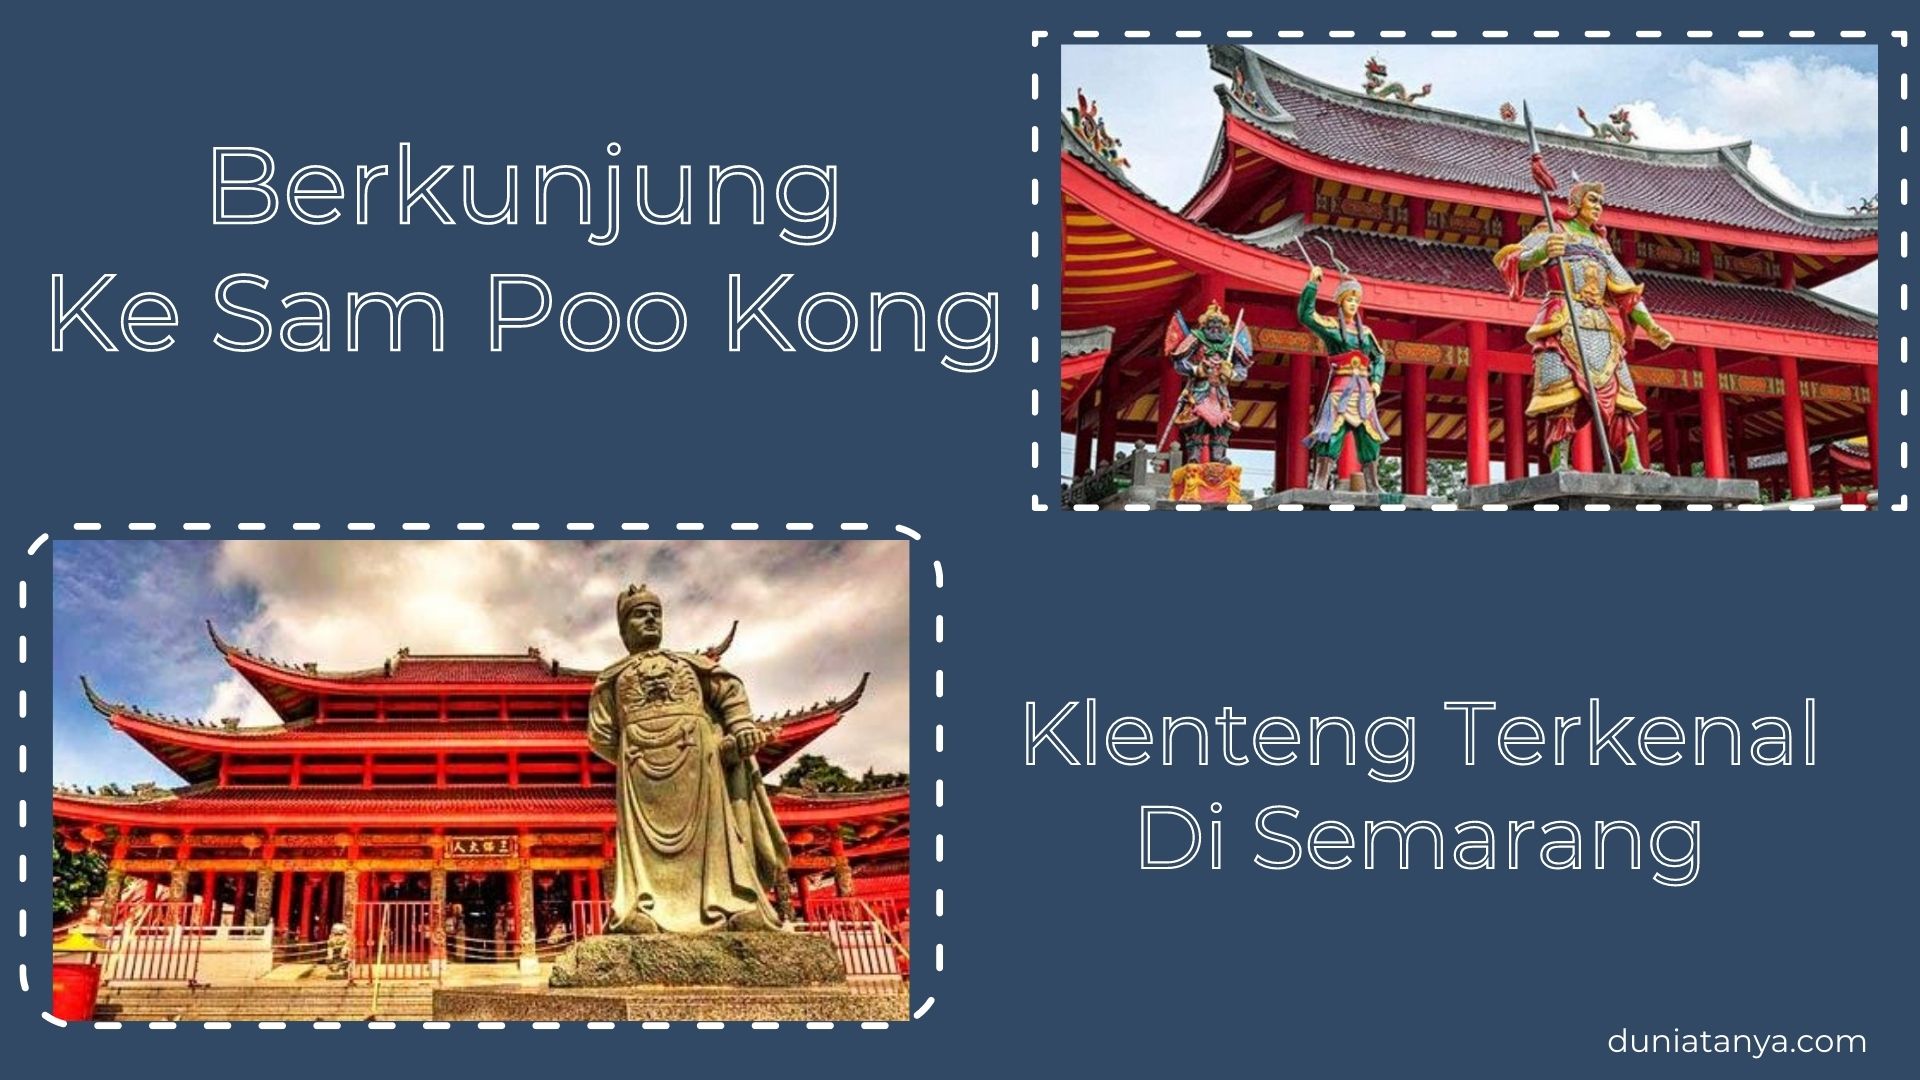 You are currently viewing Berkunjung Ke Sam Poo Kong : Klenteng Terkenal Di Semarang